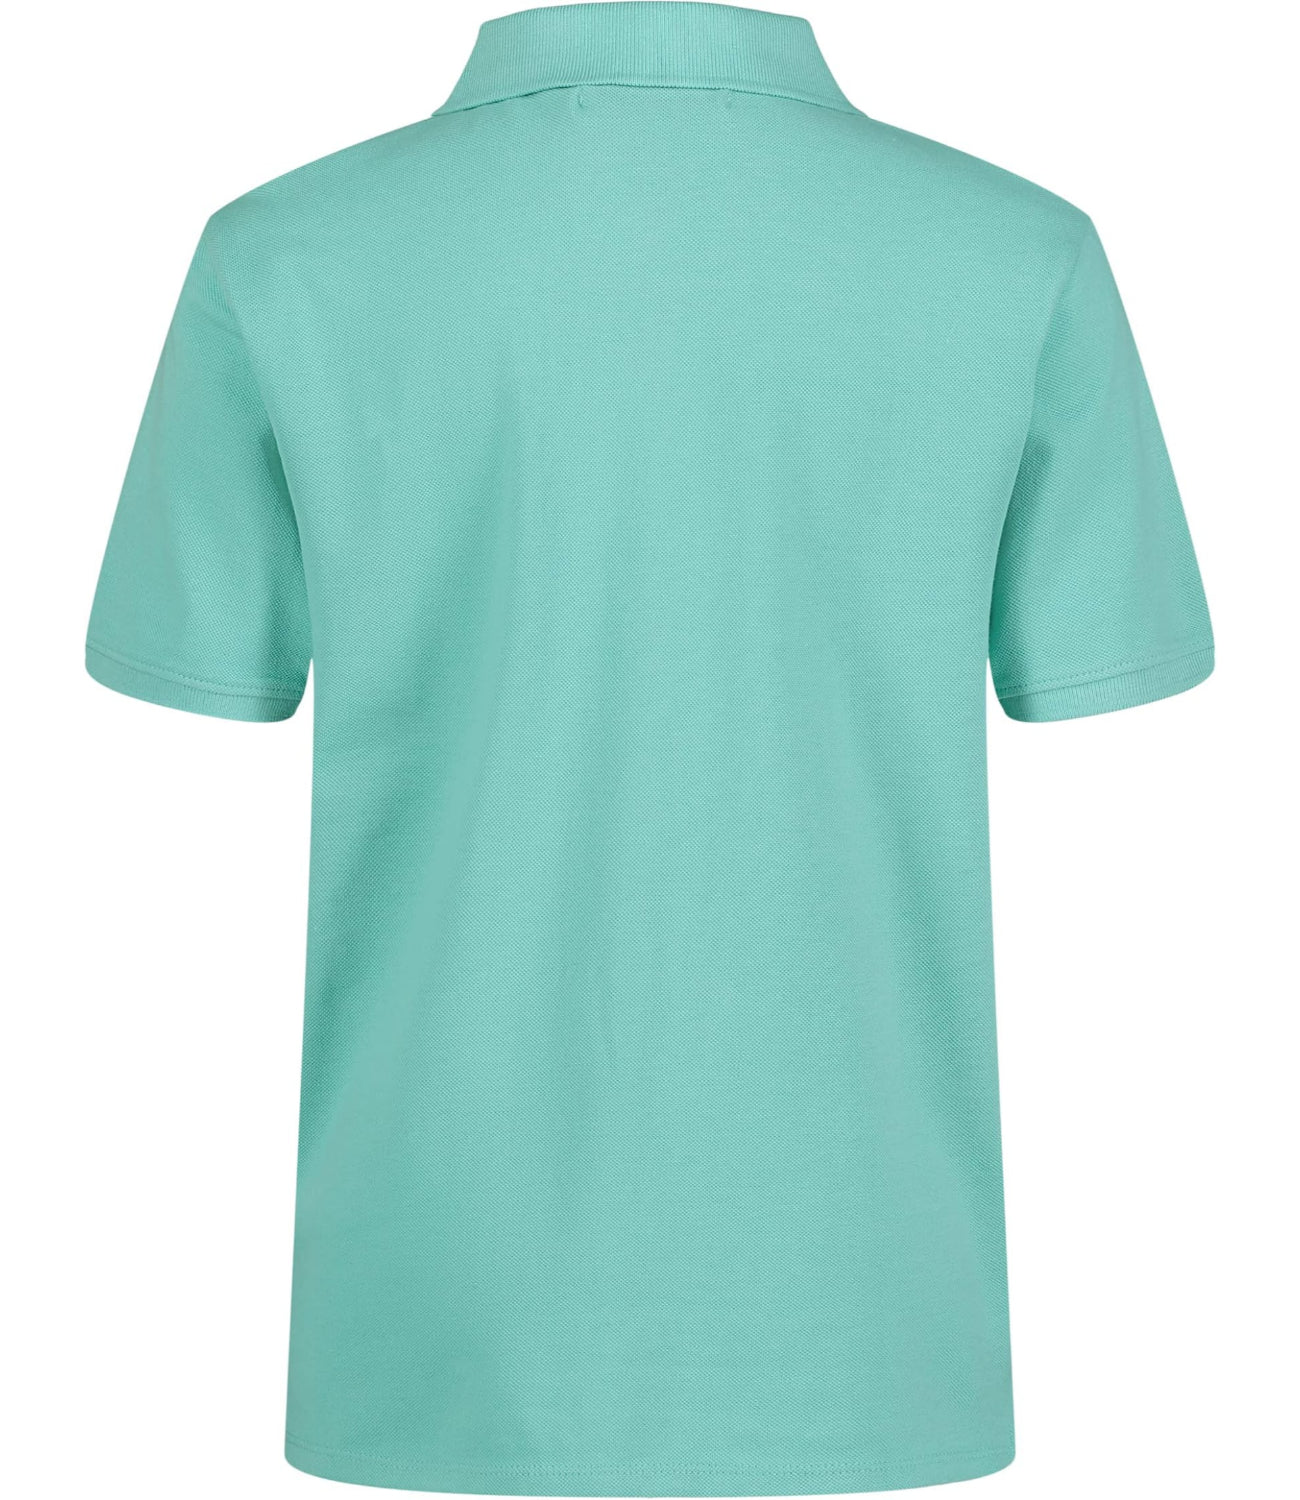 Calvin Klein Boys 4-7 Short Sleeve Pique Polo Shirt